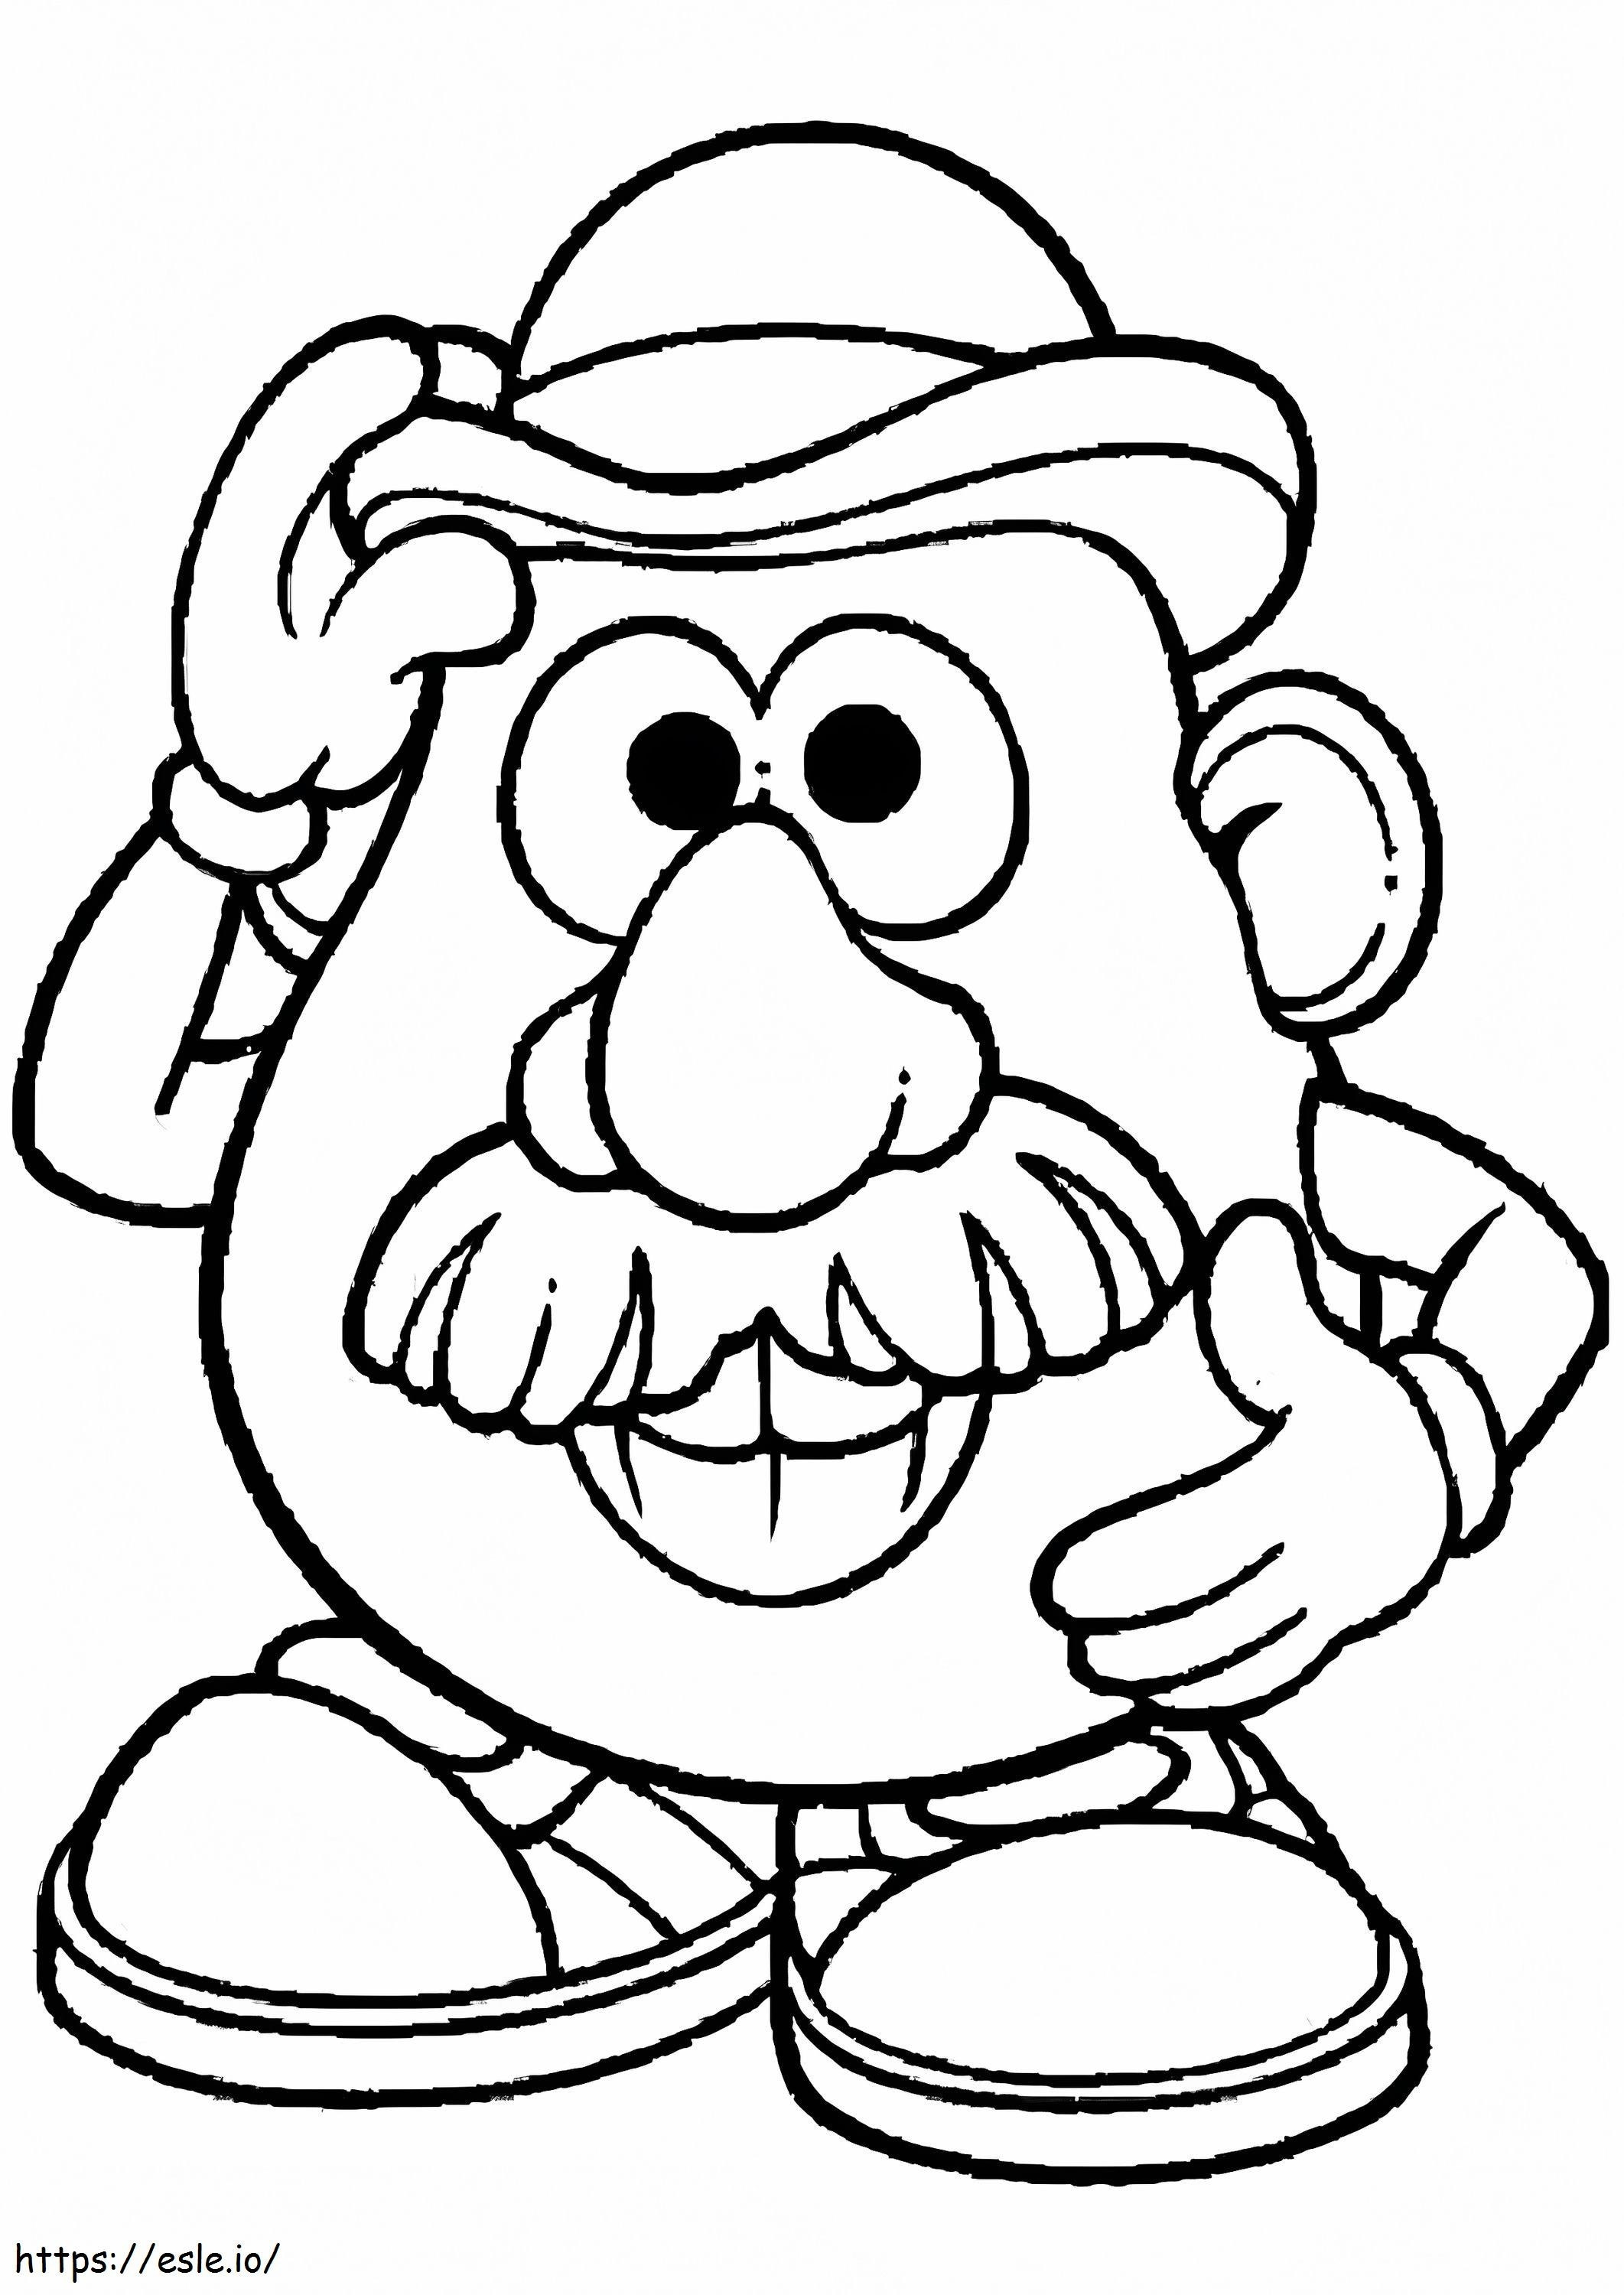 Mr. Potato Head Funny coloring page